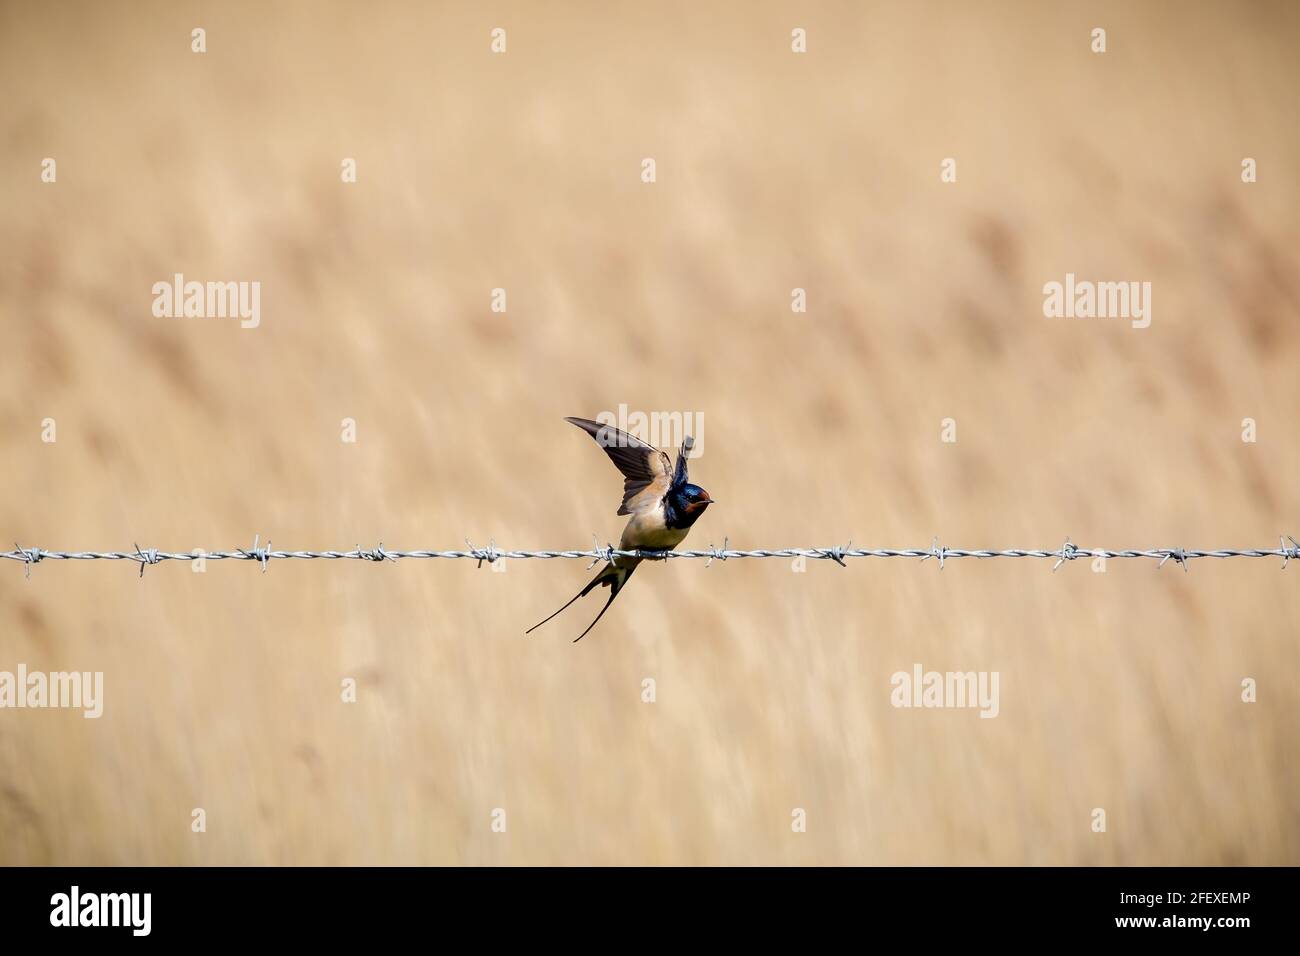 Un inghiottito che prende il volo da una recinzione di filo spinato Foto Stock